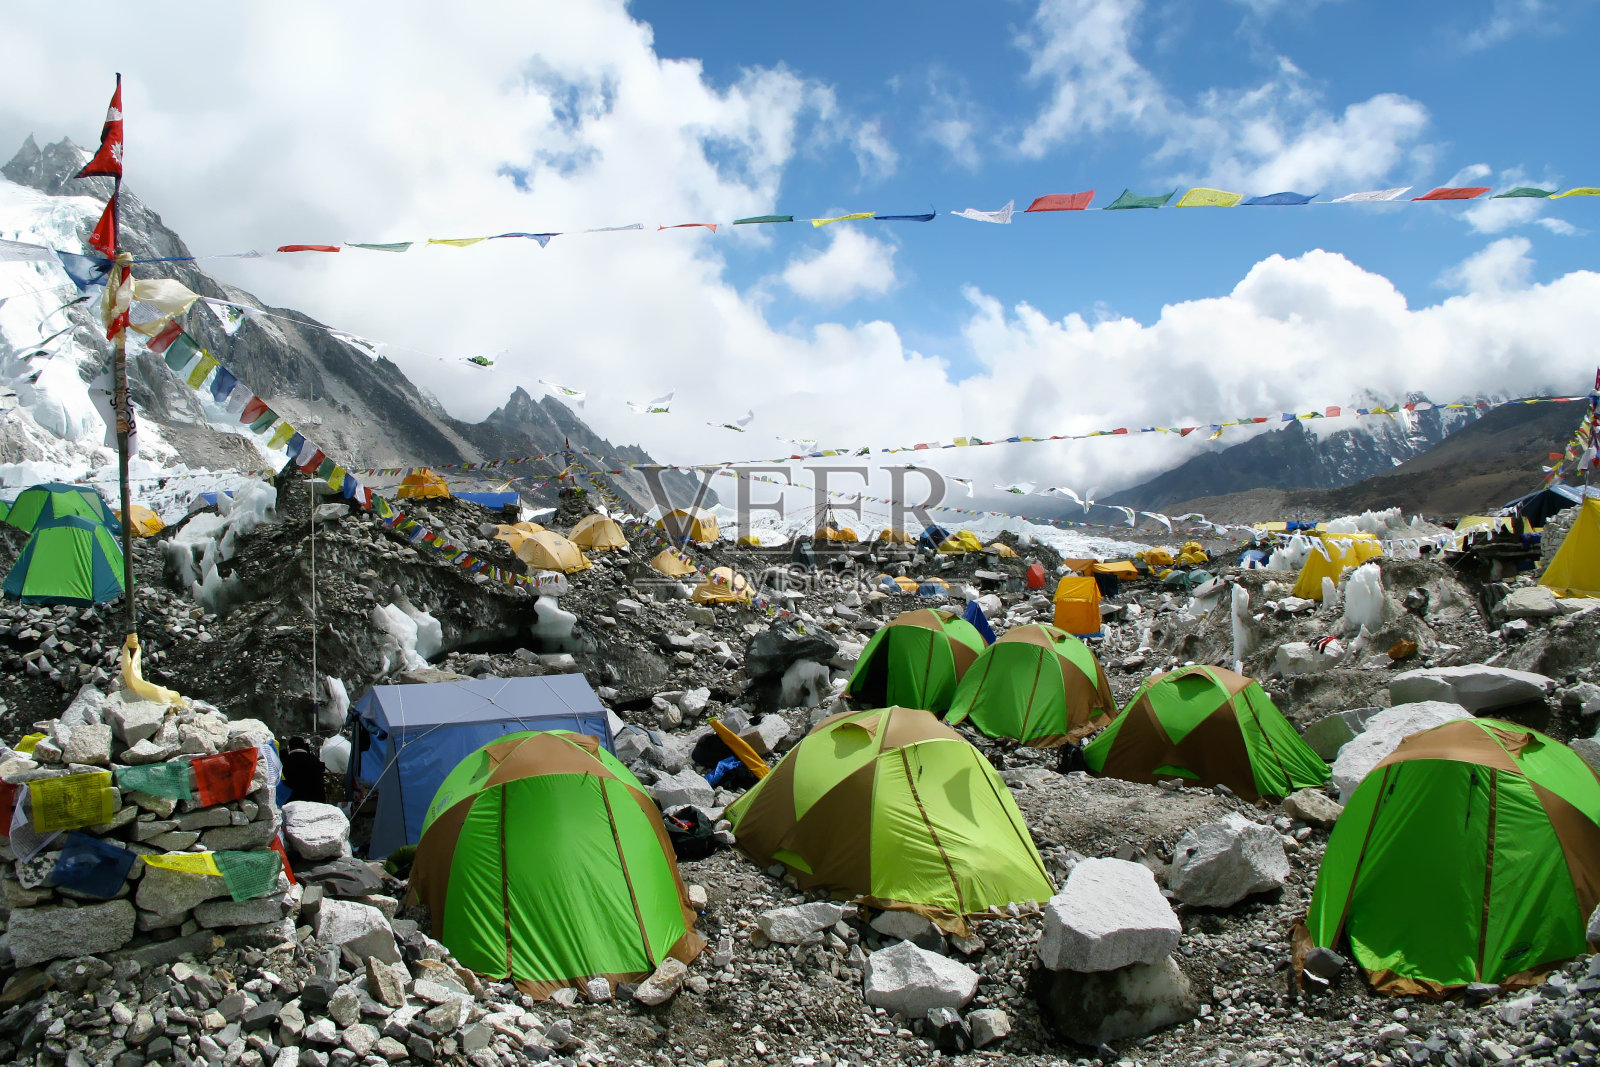 尼泊尔珠穆朗玛峰地区珠峰大本营的彩色帐篷照片摄影图片